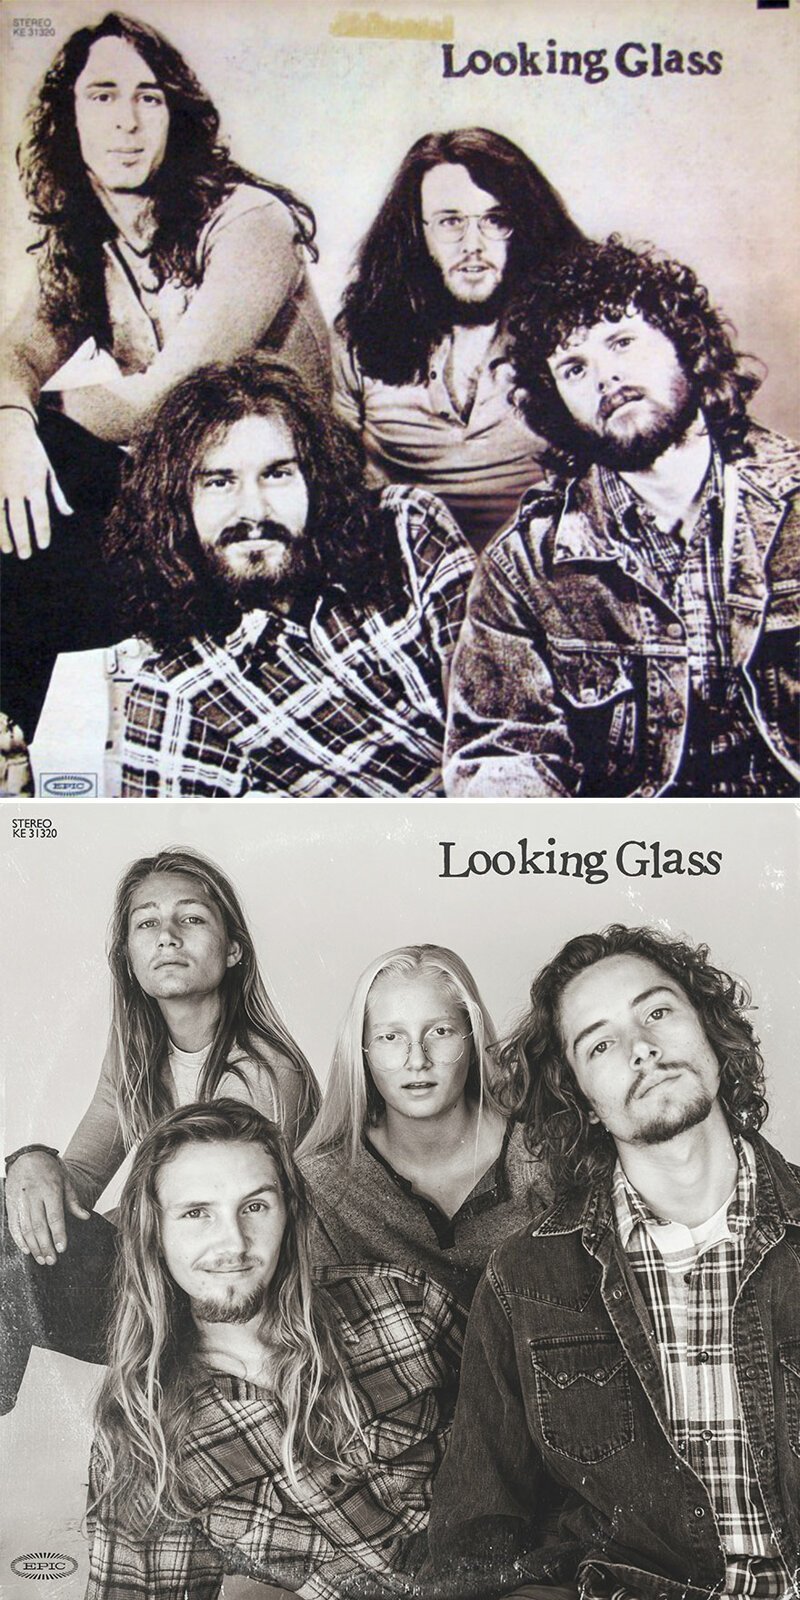 3. Альбом Looking Glass, американской поп-рок группы с громким хитом "Brandy (You're a Fine Girl)", 1972